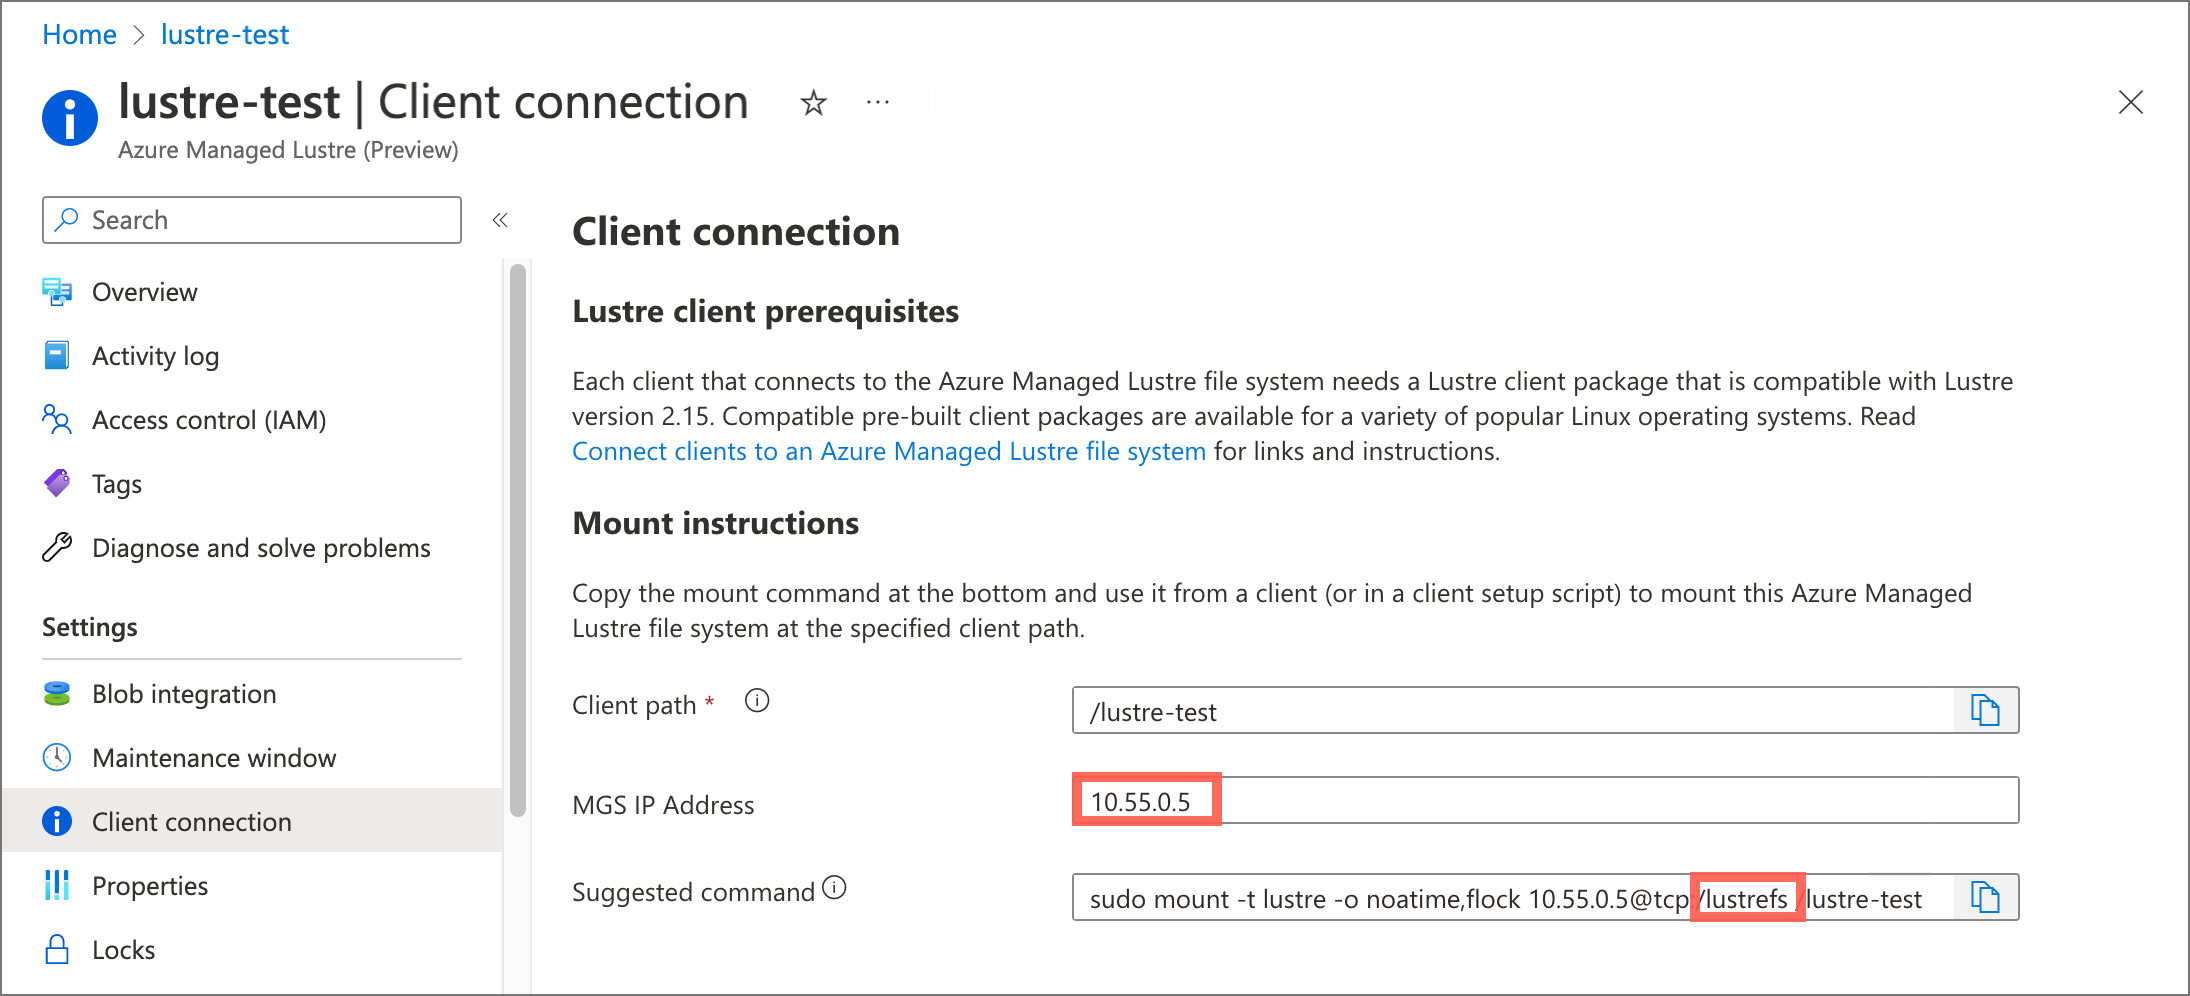 Captura de tela da página conexão do cliente portal do Azure. O endereço IP do MGS e o nome 